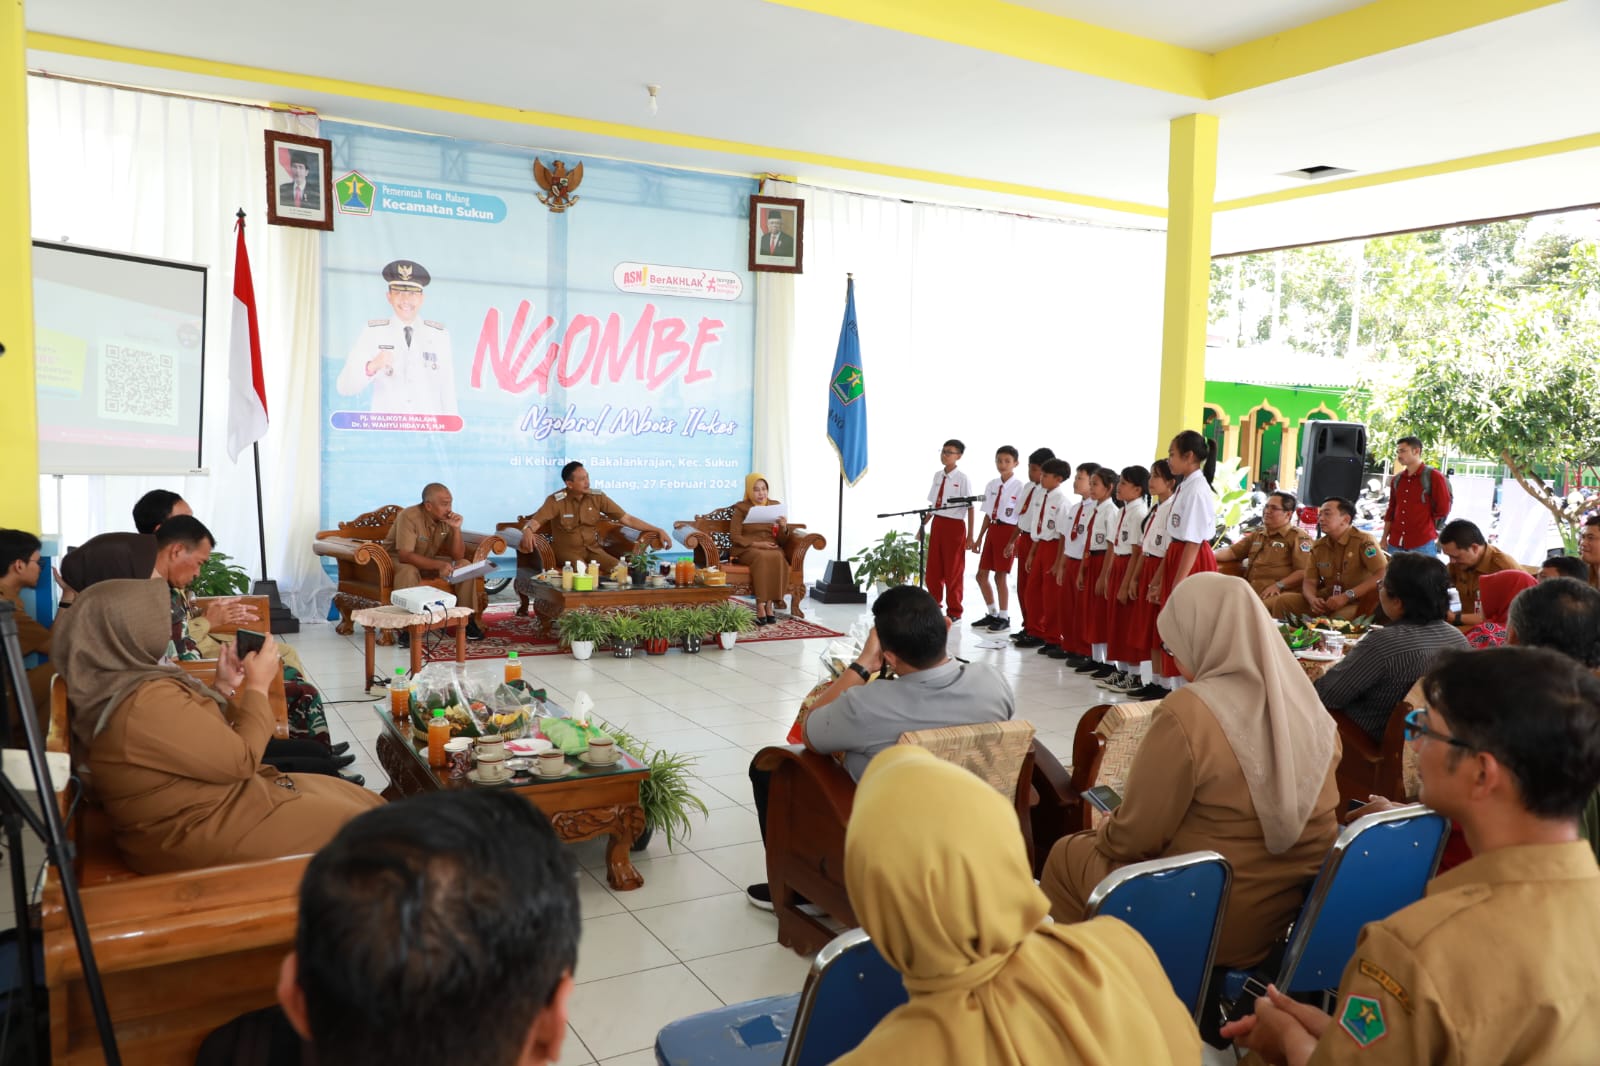 Pj Wali Kota Malang berdialog dengan masyarakat di Bankalanjranan. Foto / dok Prokopim Setda Kota Malang